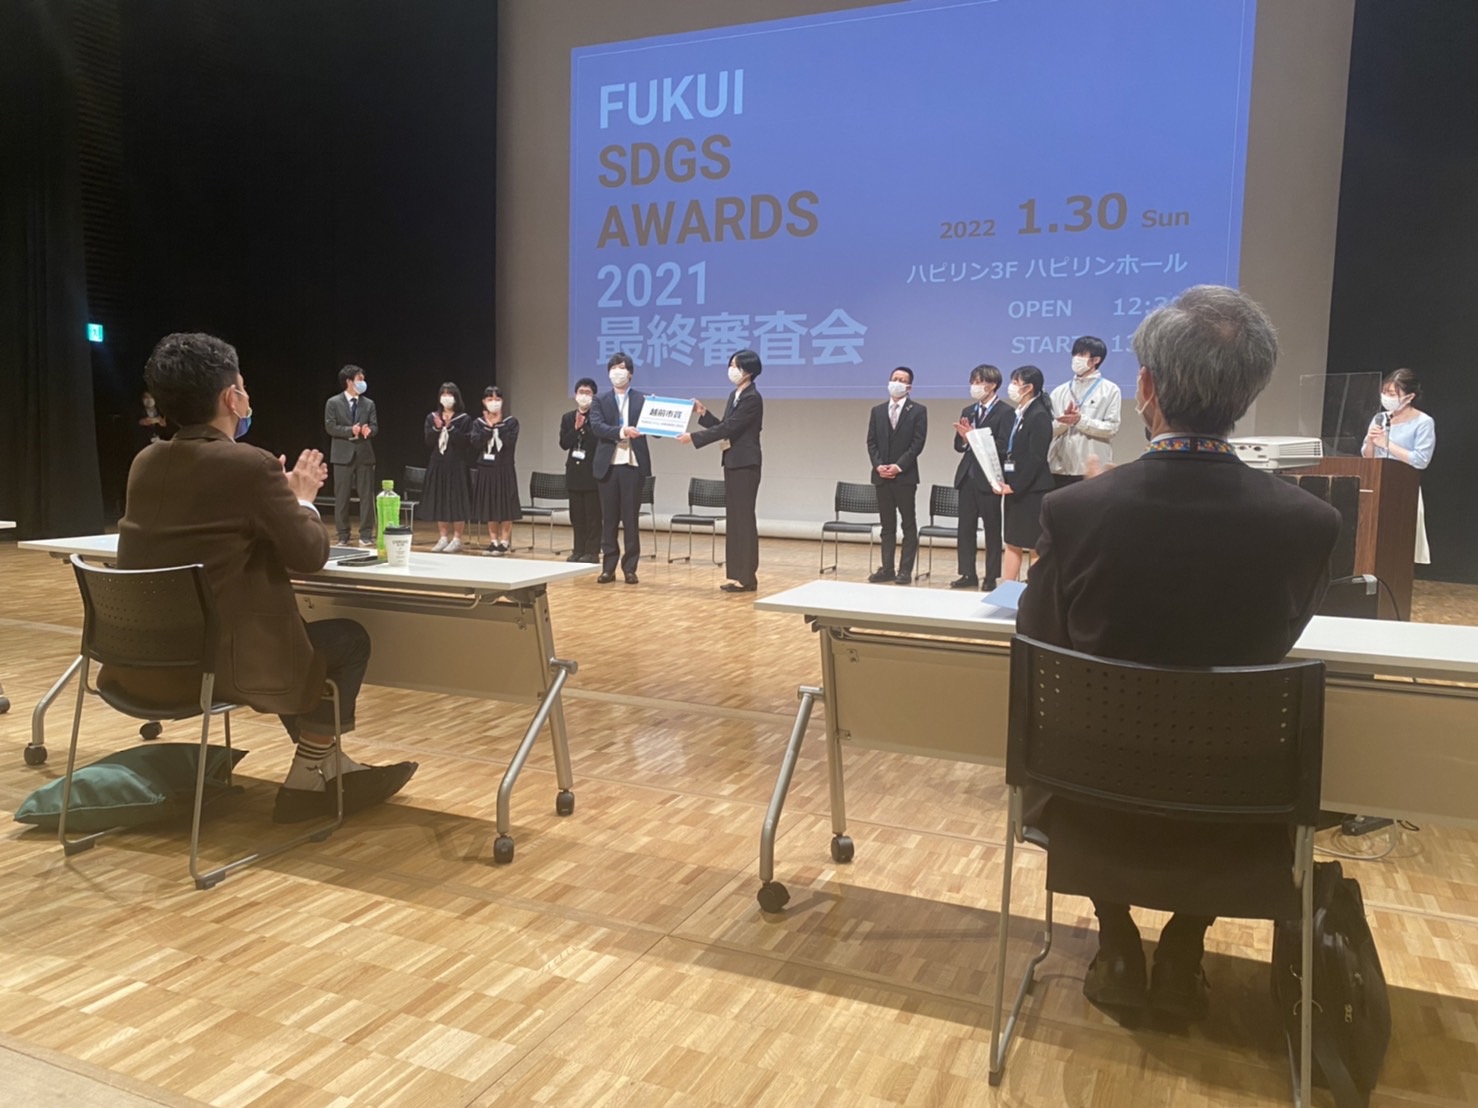 ​「福井 SDGs AWARDS 2021」越前市賞を受賞しました！